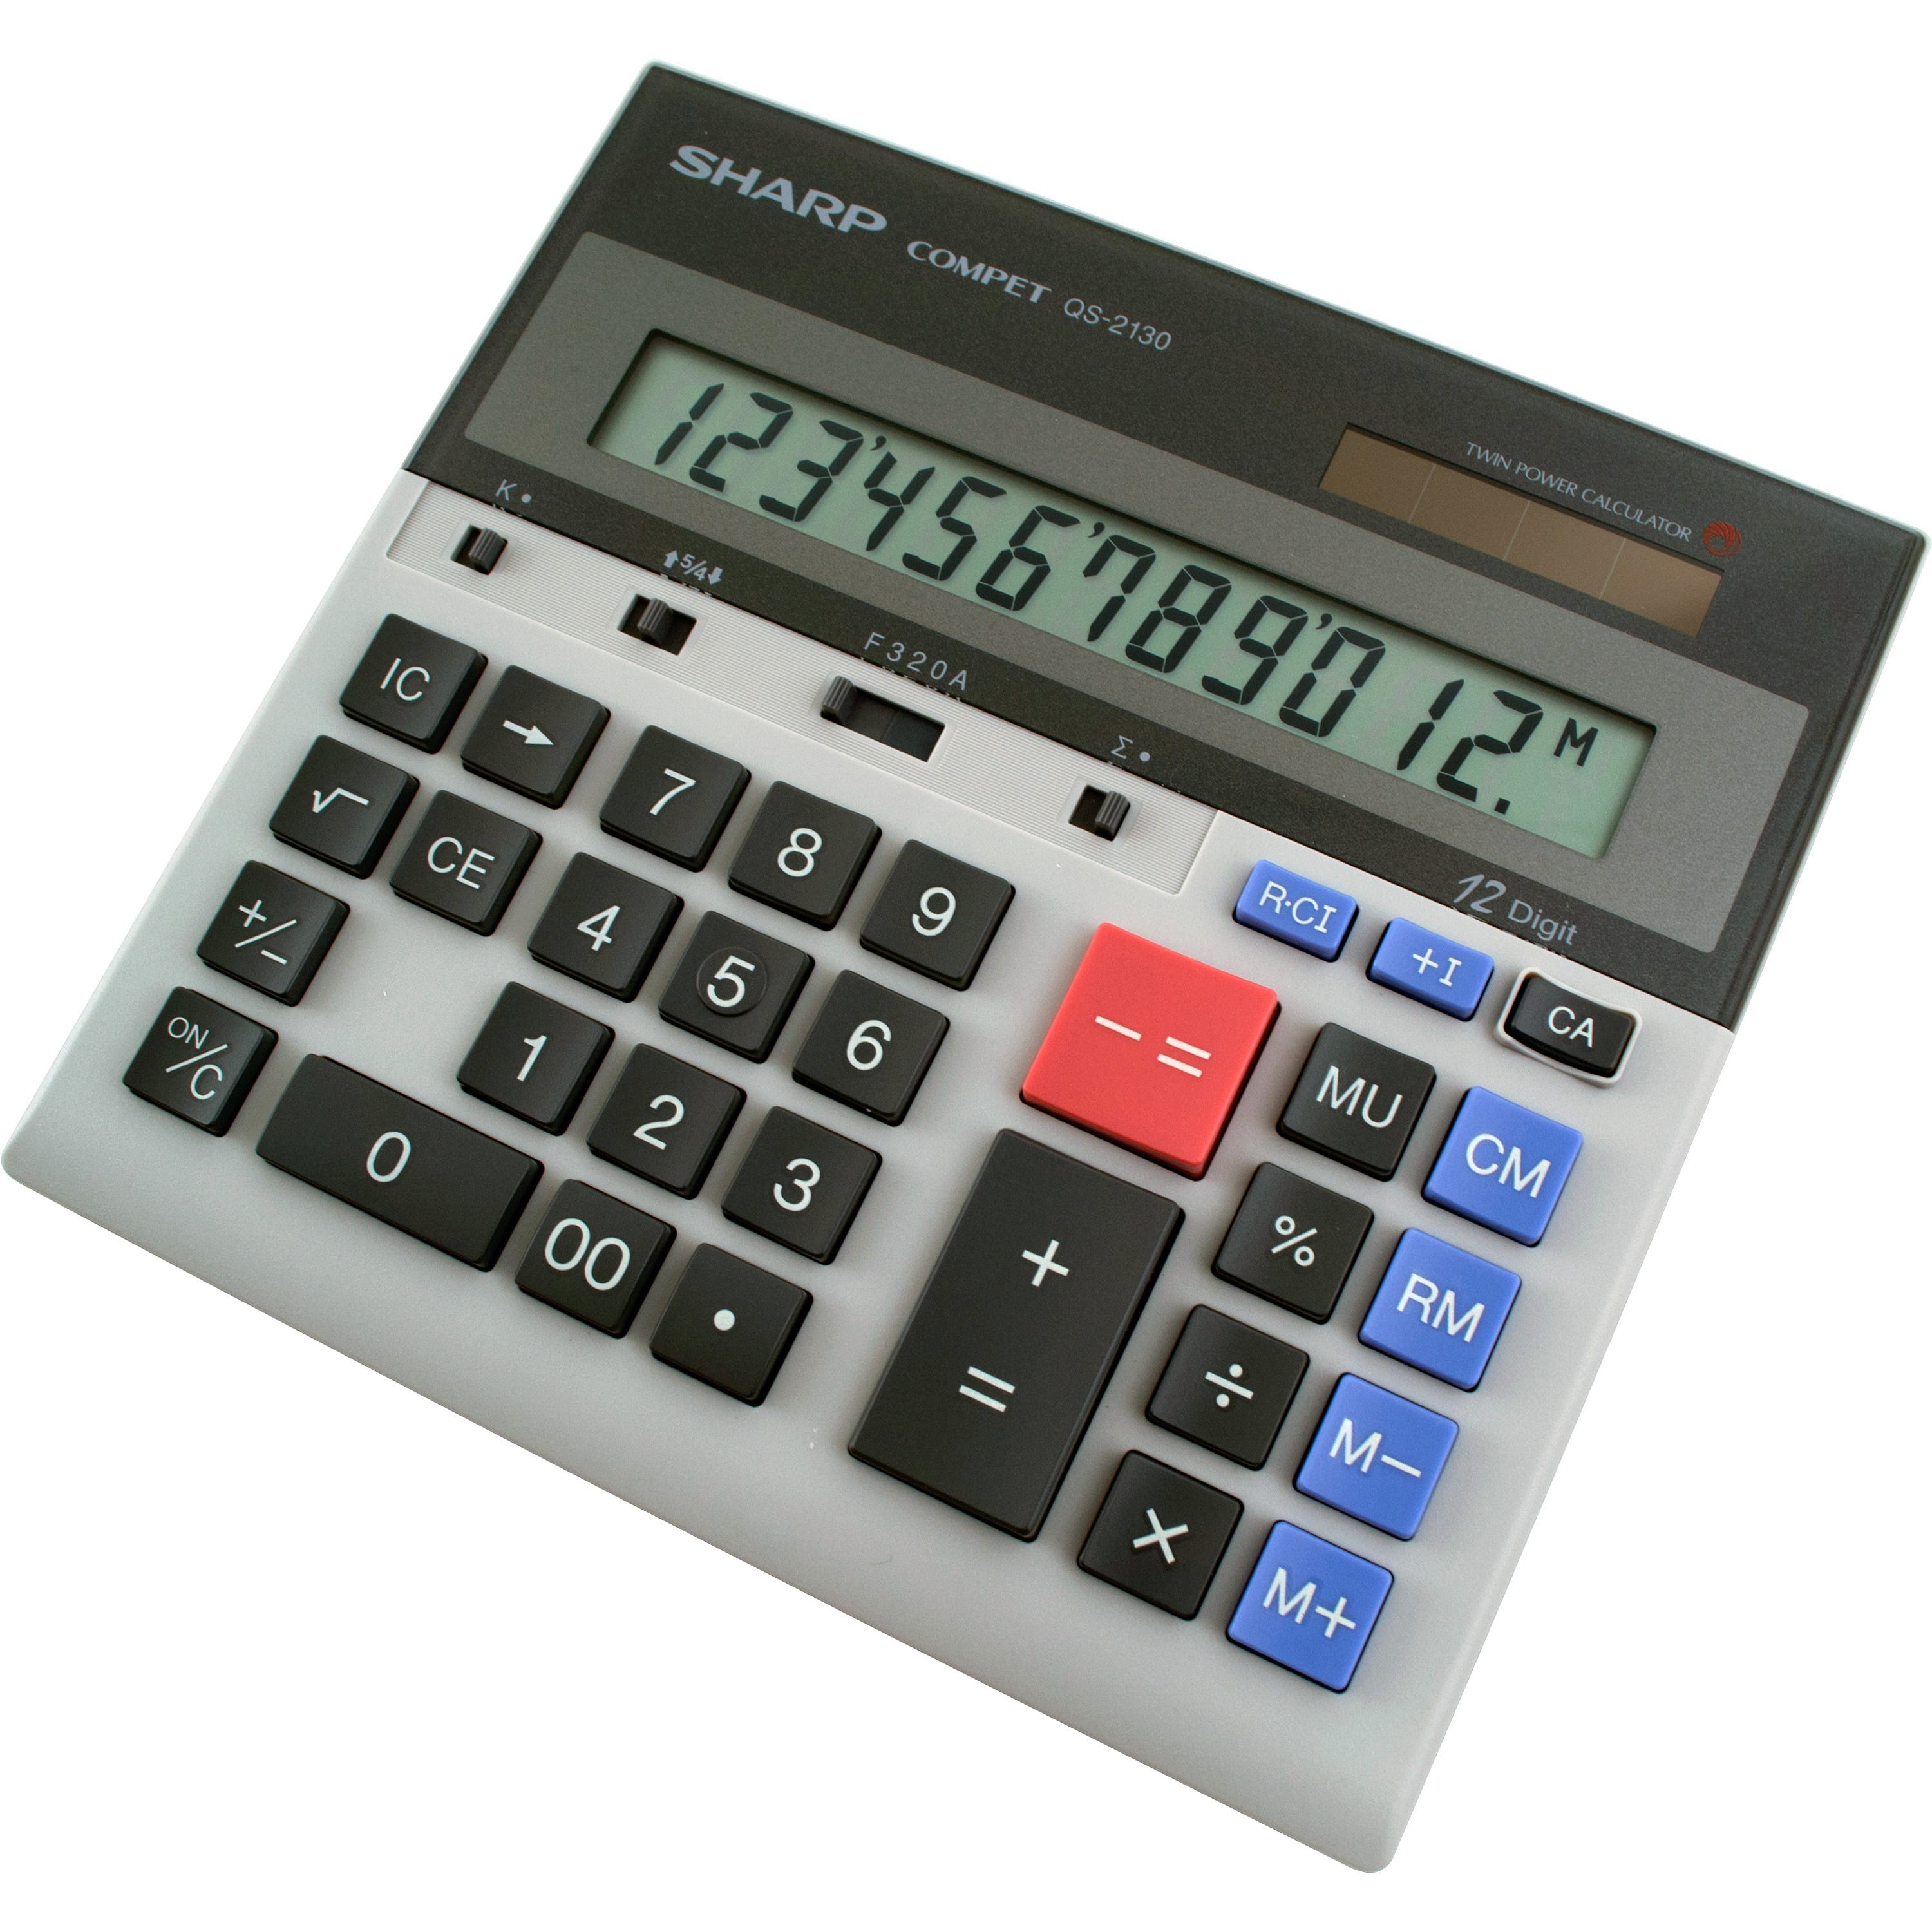 Sharp Calculators Qs 2130 12 Digit Commercial Desktop Calculator